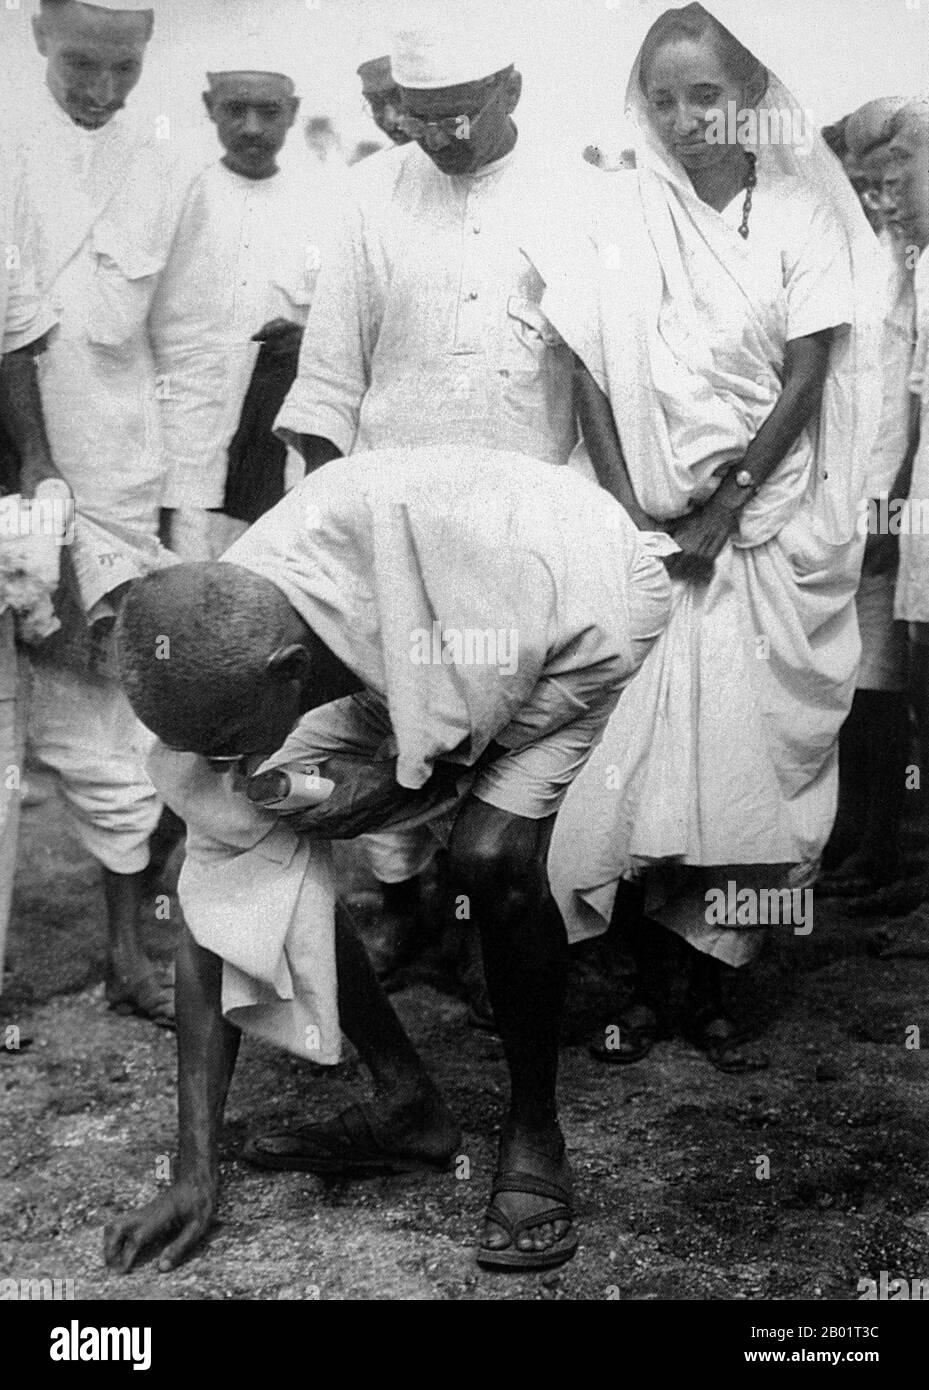 Indien: Mahatma Gandhi (2. Oktober 1869 – 30. Januar 1948), führender politischer und ideologischer Führer der indischen Unabhängigkeitsbewegung, beendet den Salzmarsch in Dandi am 5. April 1930. Mohandas Karamchand Gandhi war der führende politische und ideologische Führer Indiens während der indischen Unabhängigkeitsbewegung. Er war Pionier bei Satyagraha. Dies wird definiert als Widerstand gegen Tyrannei durch zivilen Massenungehorsam, eine Philosophie, die fest auf Ahimsa beruht, oder totale Gewaltlosigkeit. Dieses Konzept half Indien, Unabhängigkeit zu erlangen und inspirierte Bewegungen für Bürgerrechte und Freiheit auf der ganzen Welt. Stockfoto